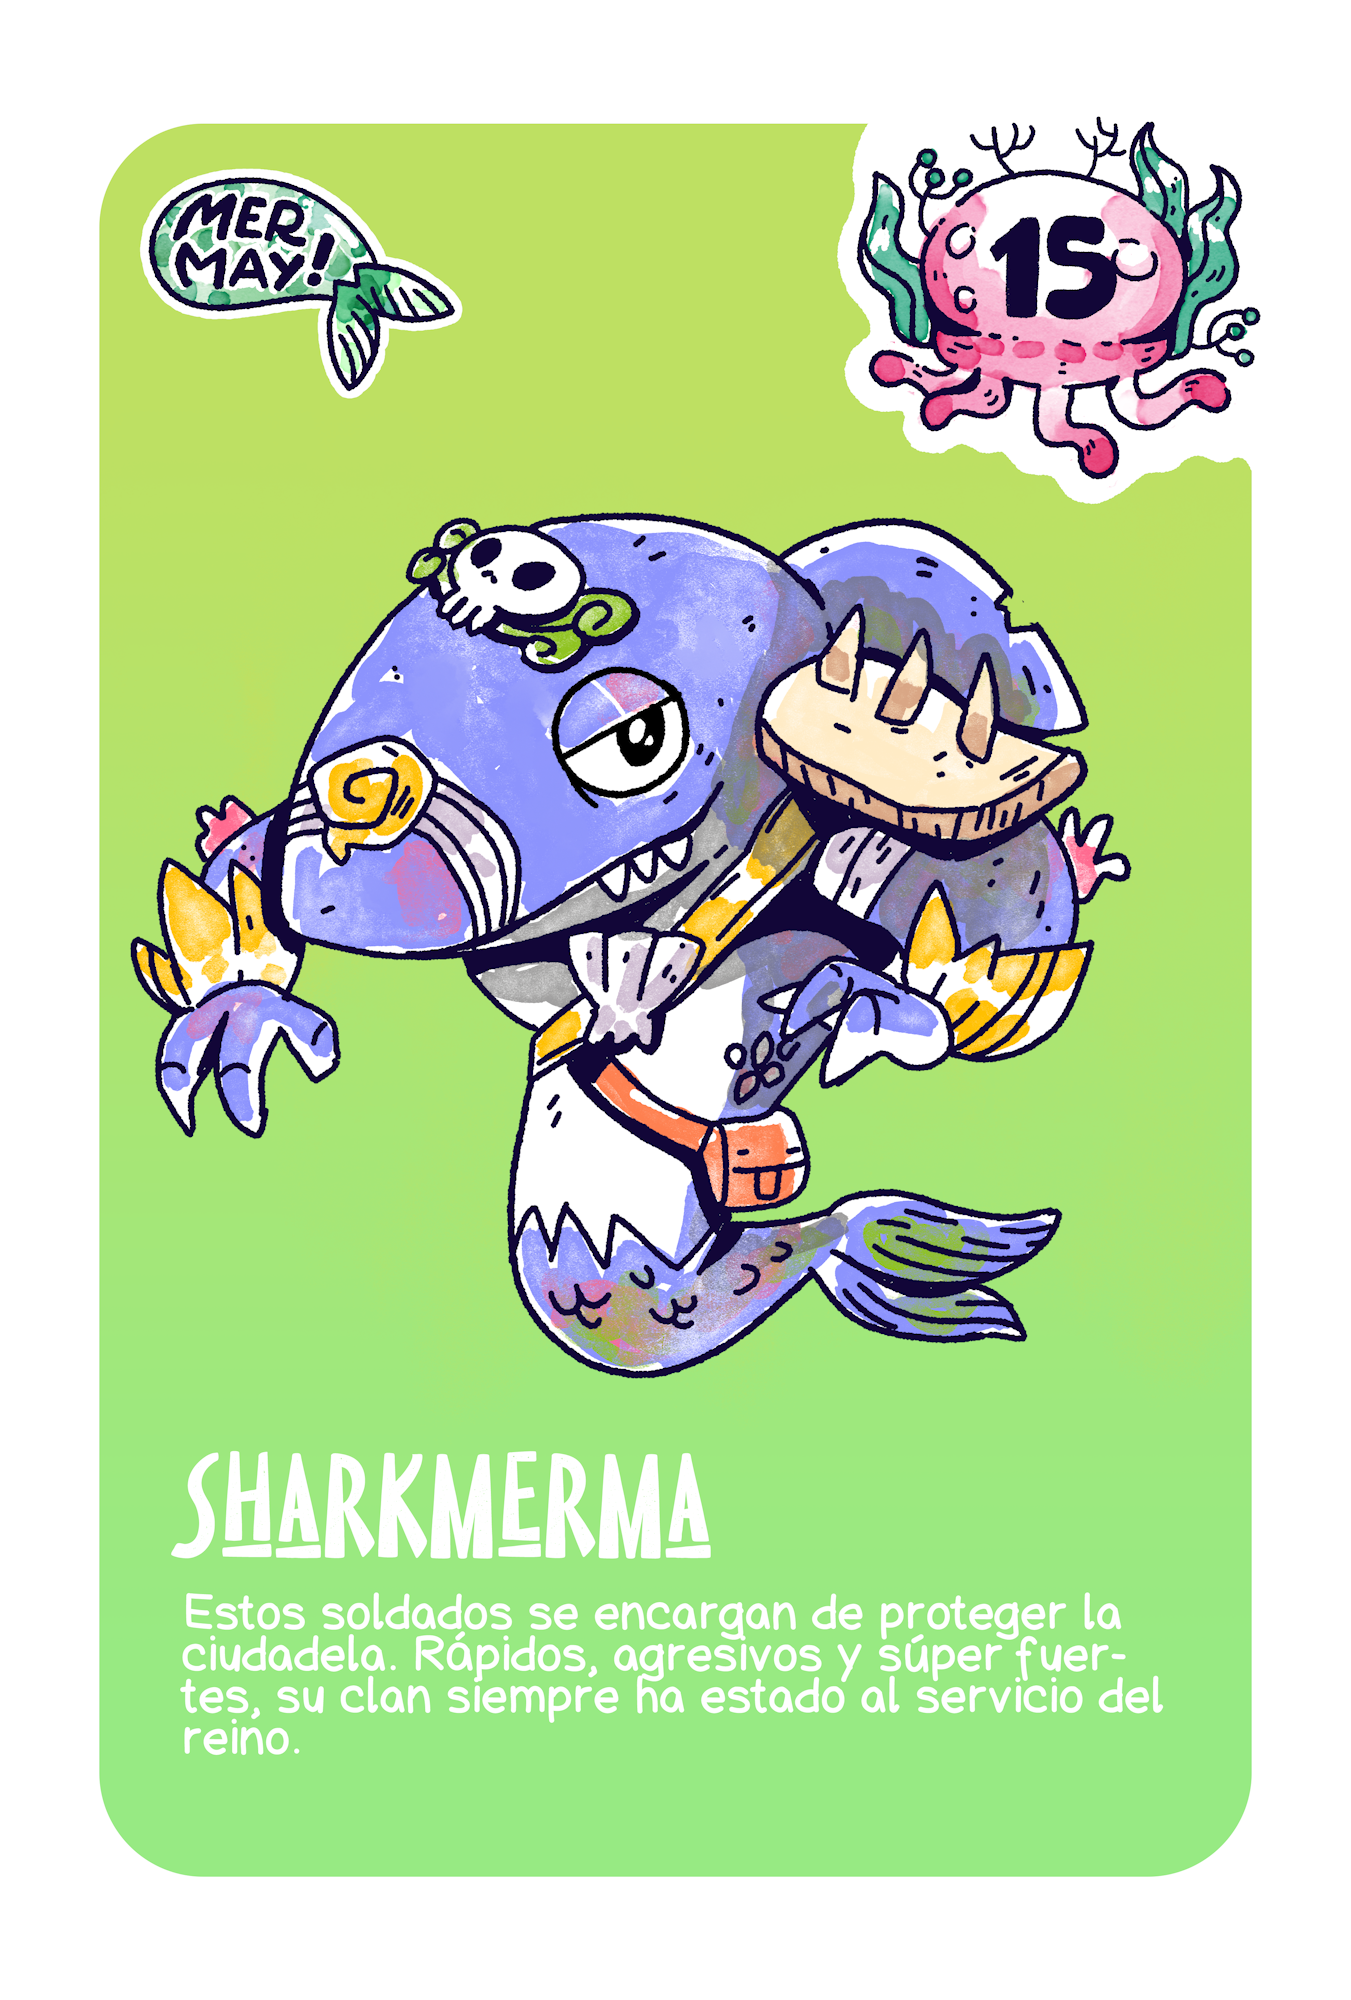 Sharkmerma